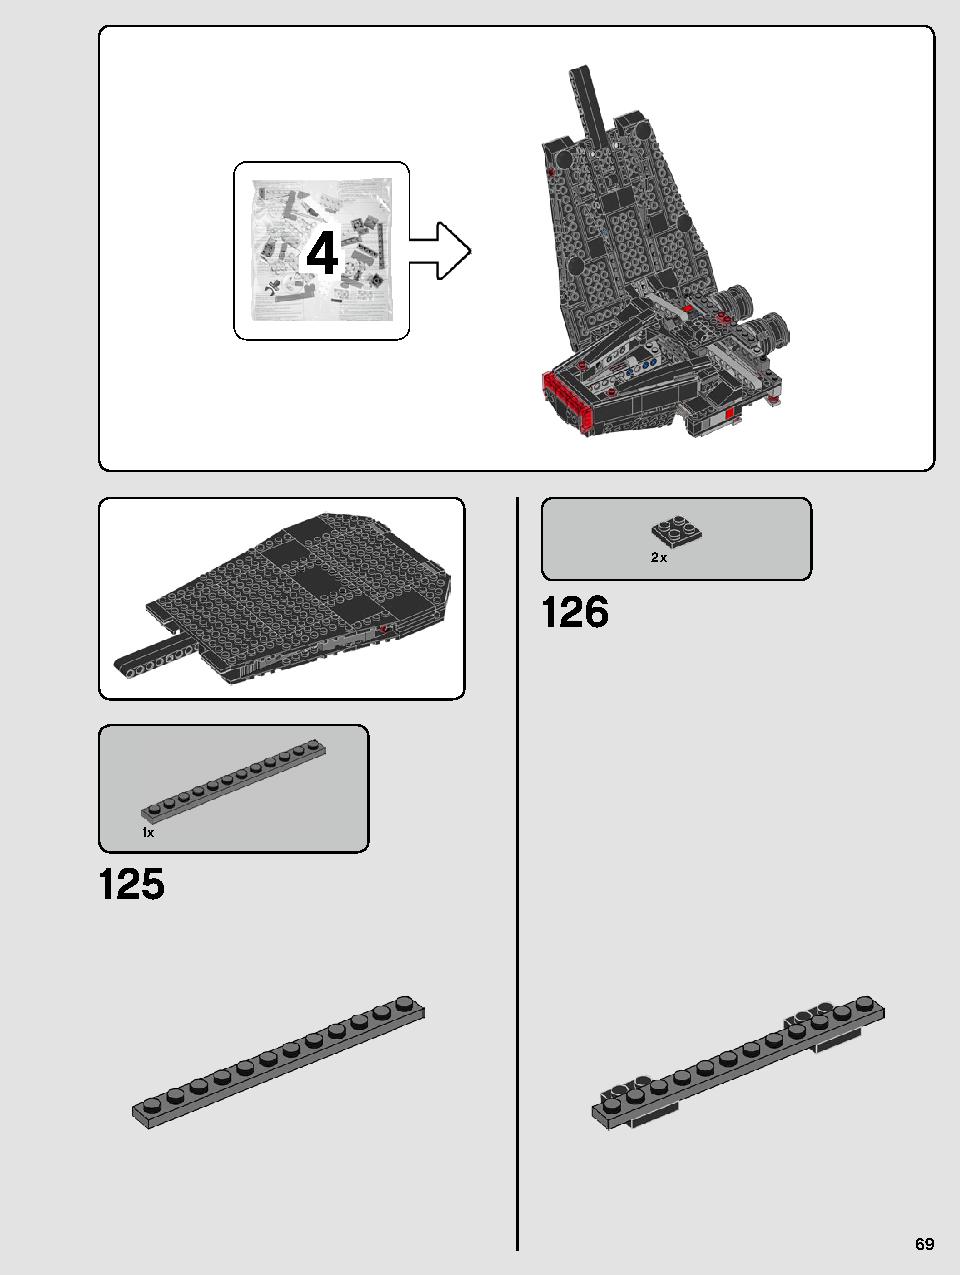 스타워즈 카일로 렌의 셔틀™ 75256 레고 세트 제품정보 레고 조립설명서 69 page